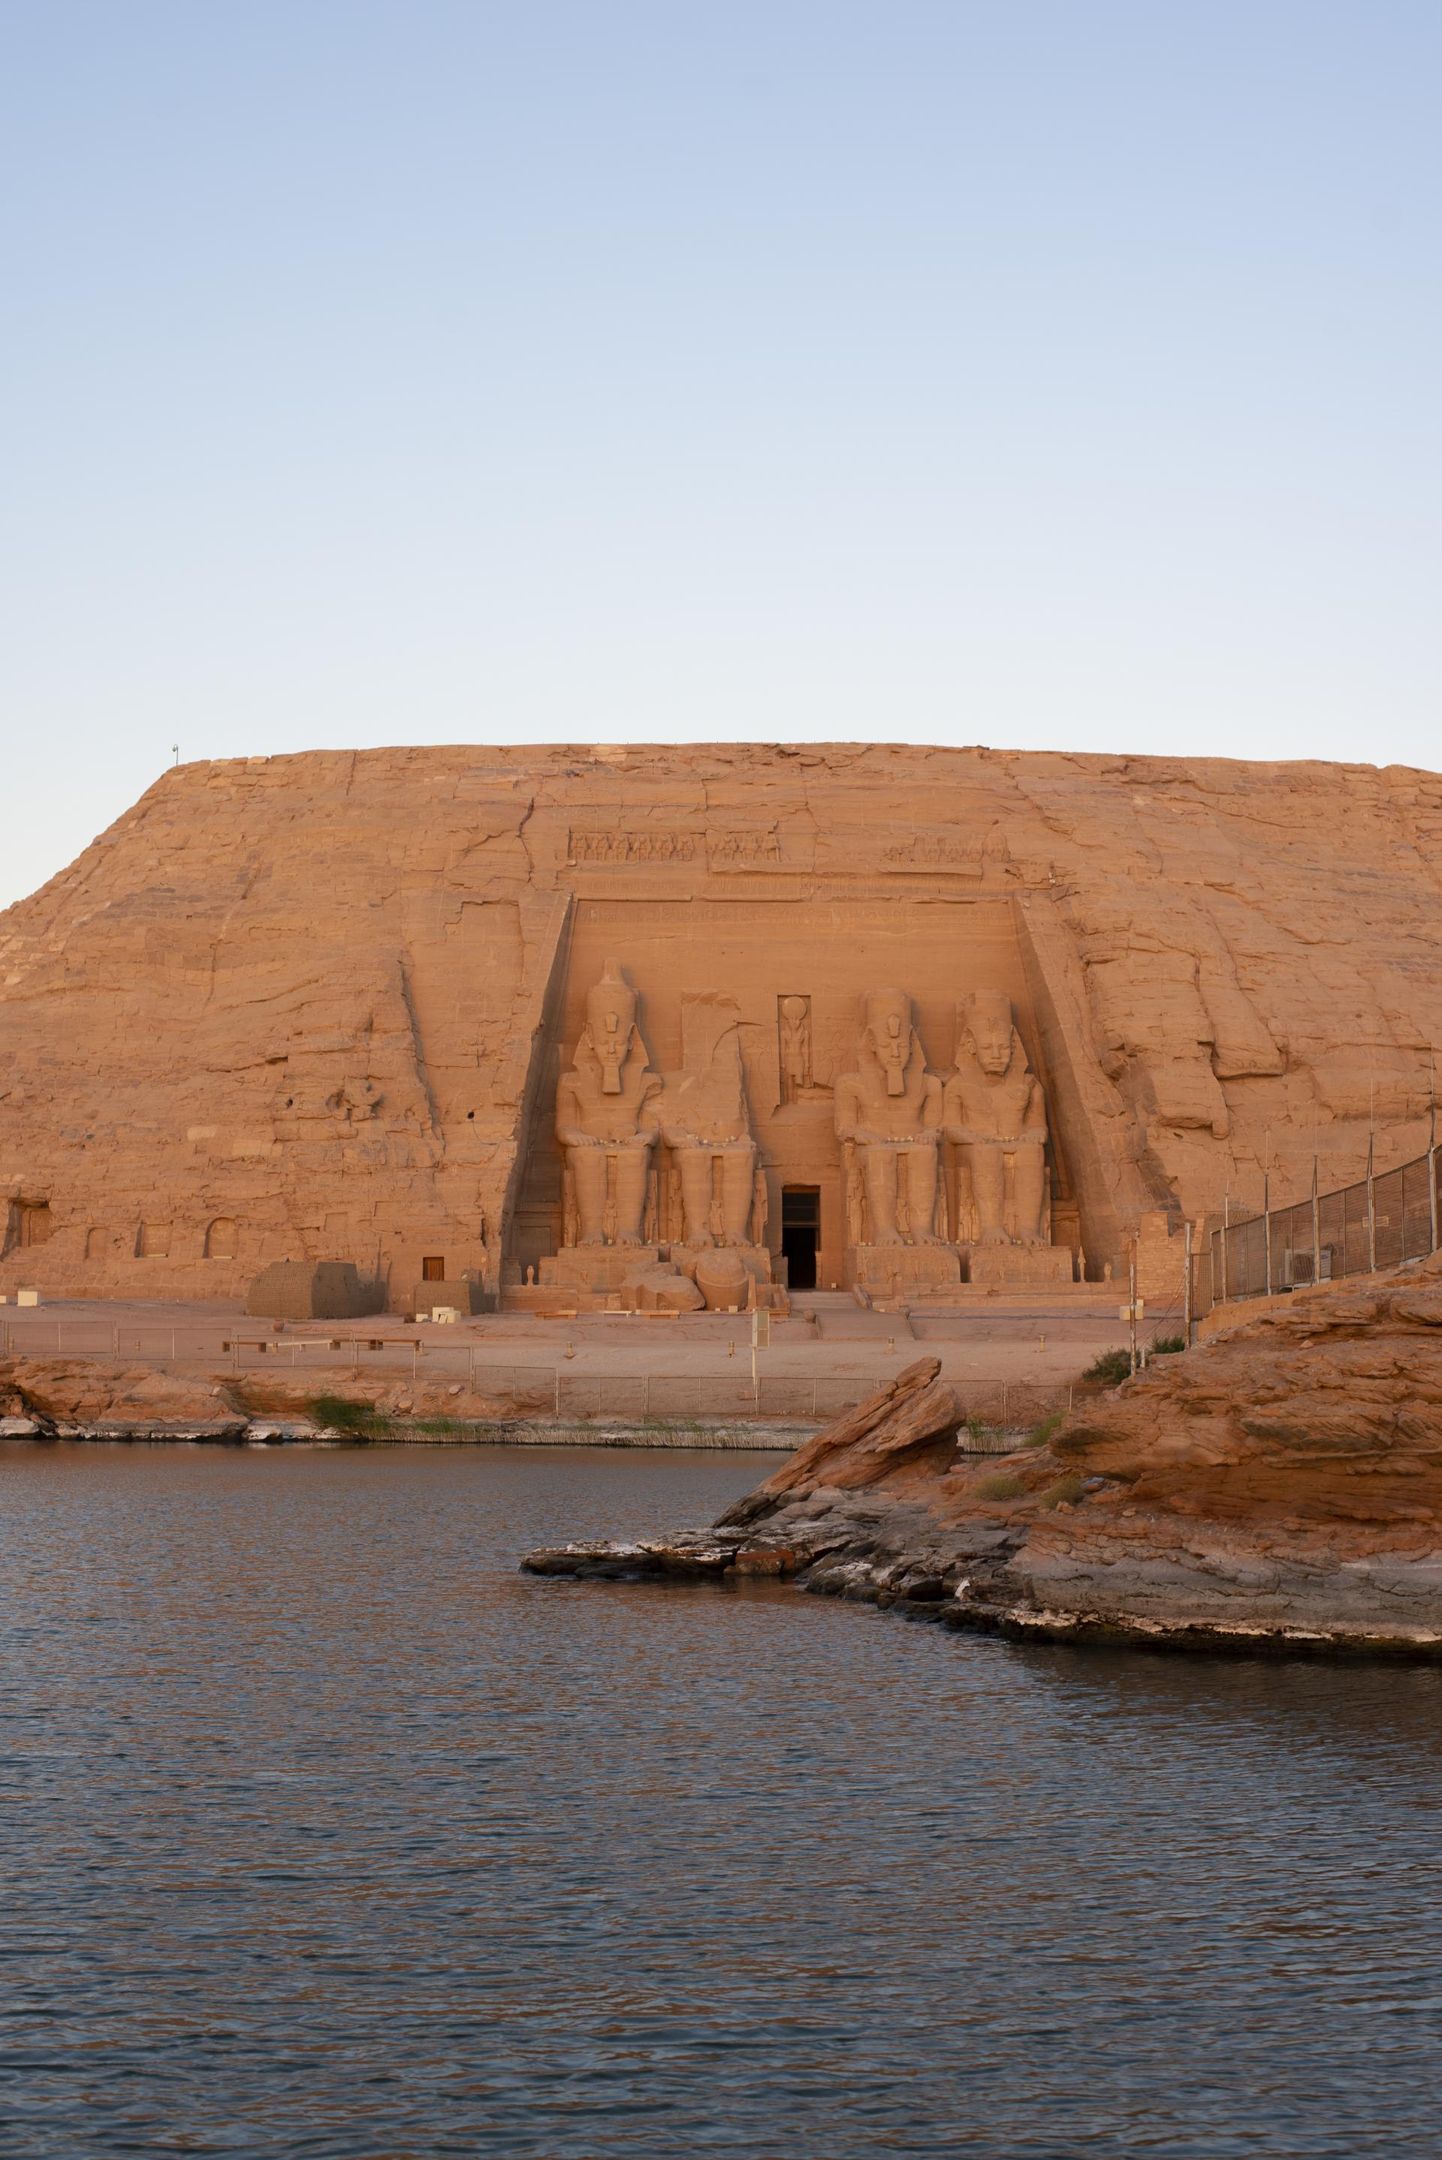 Egiptuse arhitektuur ja kultuur on teinud mitu uperpalli Abu Simbeli templite ehitamise ajast alates, ent kui midagi on jäänud, siis see on vaimustus kõigest vaaraolikult suurest. Abu Simbel annab võimaluse imetleda president Gamal Abdel Nasseri ajal Assuanisse ehitatud tammi mõju – maailma üht suurimat inimtekkelist järve, millele Abu Simbeli templi kujude pilk nüüd tüünelt suunatud on.